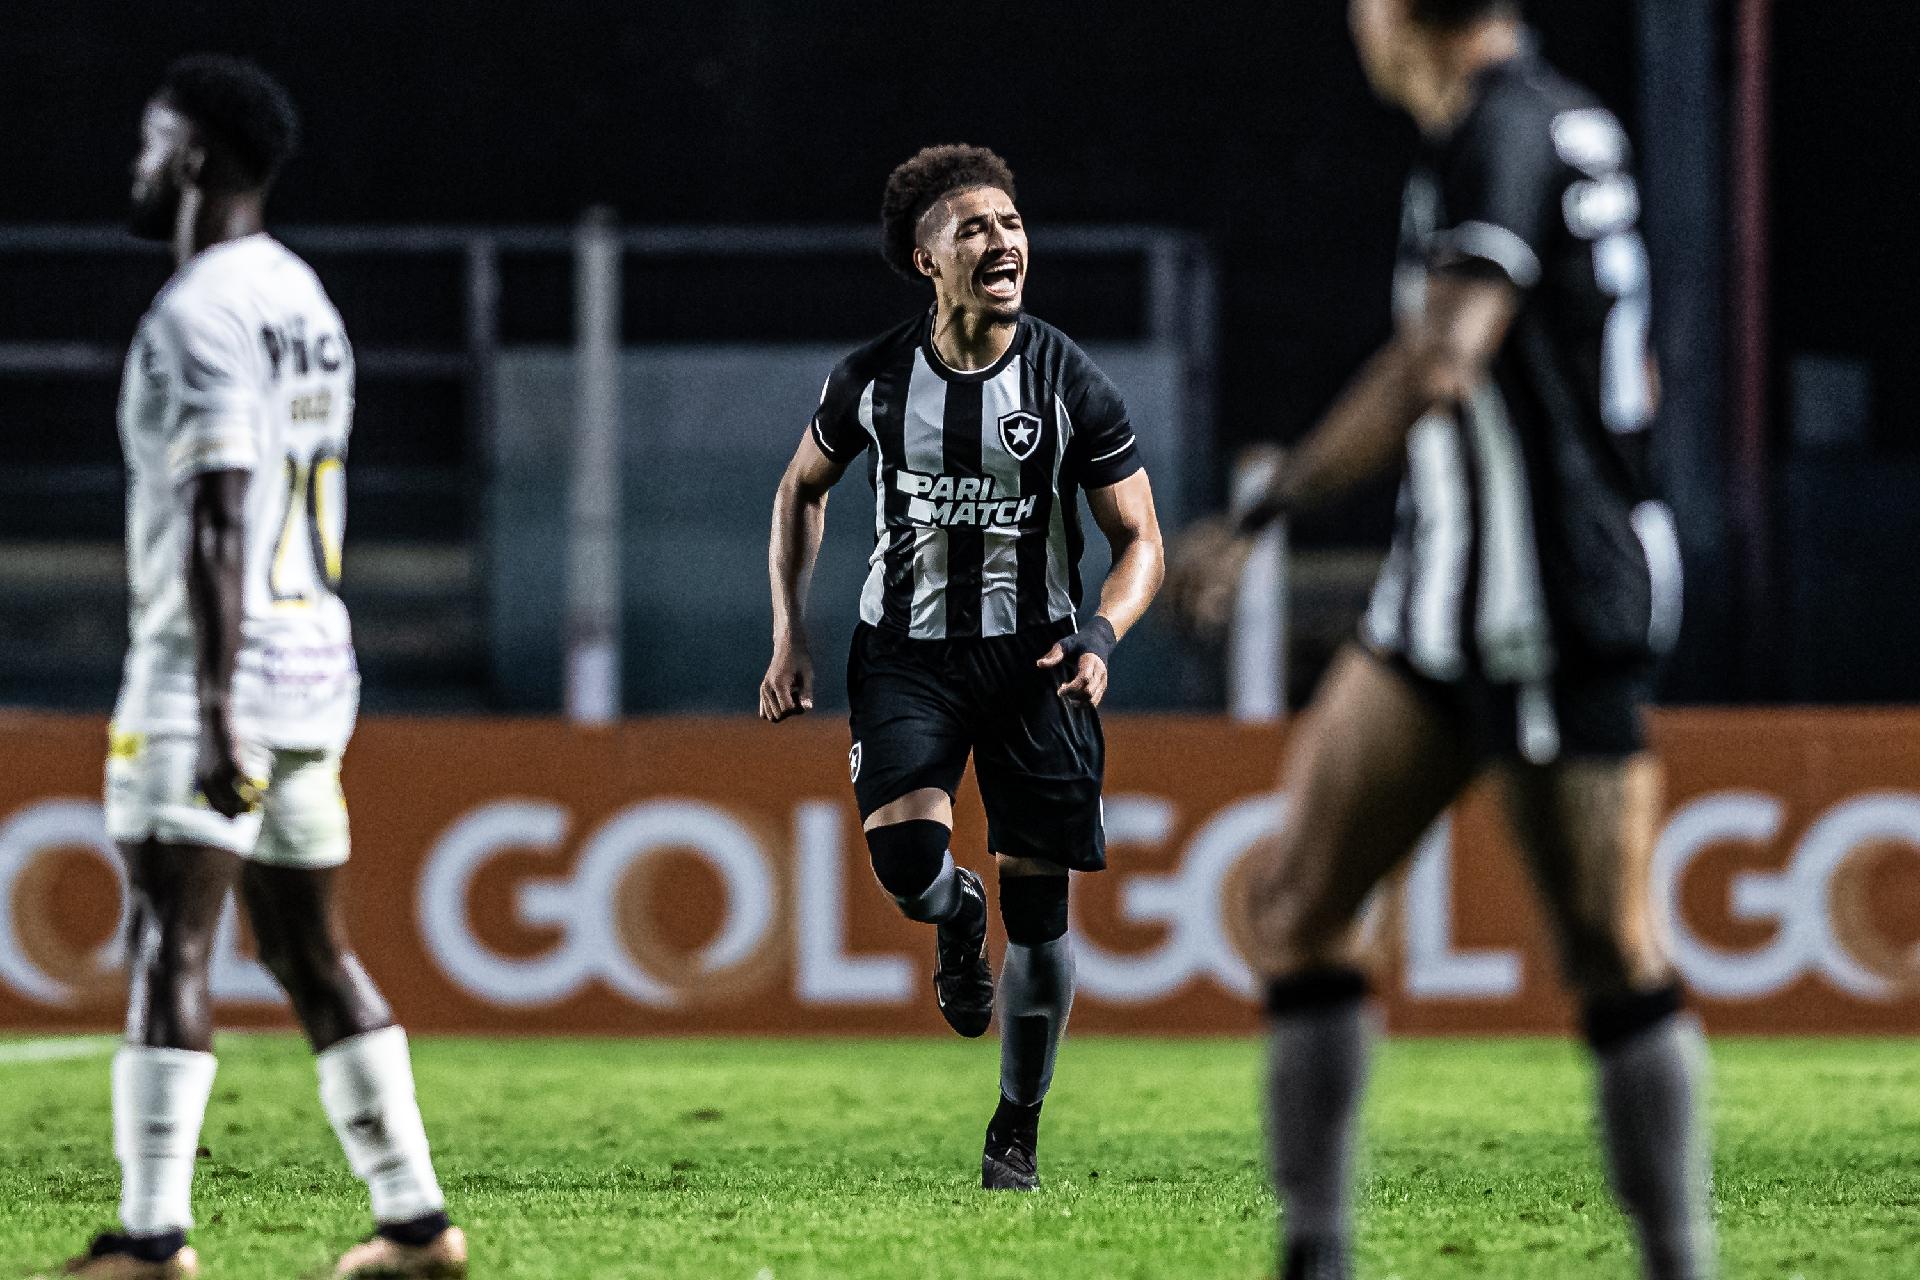 Com seis gols, acreana atacante do Botafogo lidera artilharia do